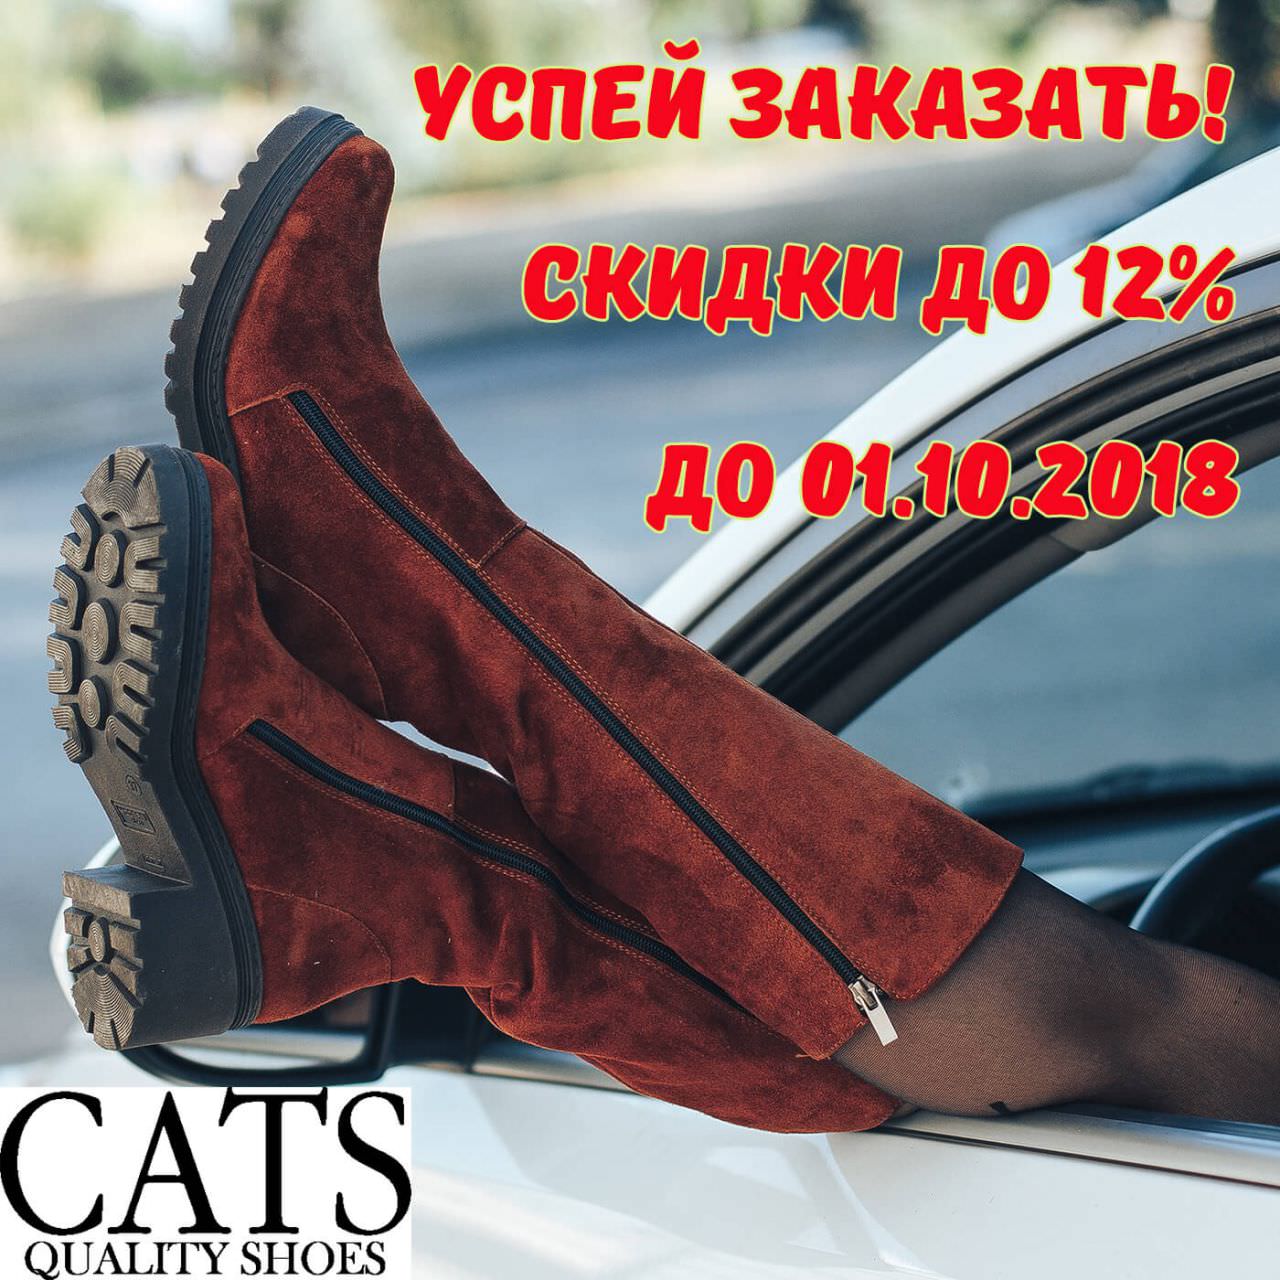 СУПЕР СКИДКИ от обувной фабрики CATS TM! ТОЛЬКО до 01 октября 2018 года мы предоставляем супер предложение!